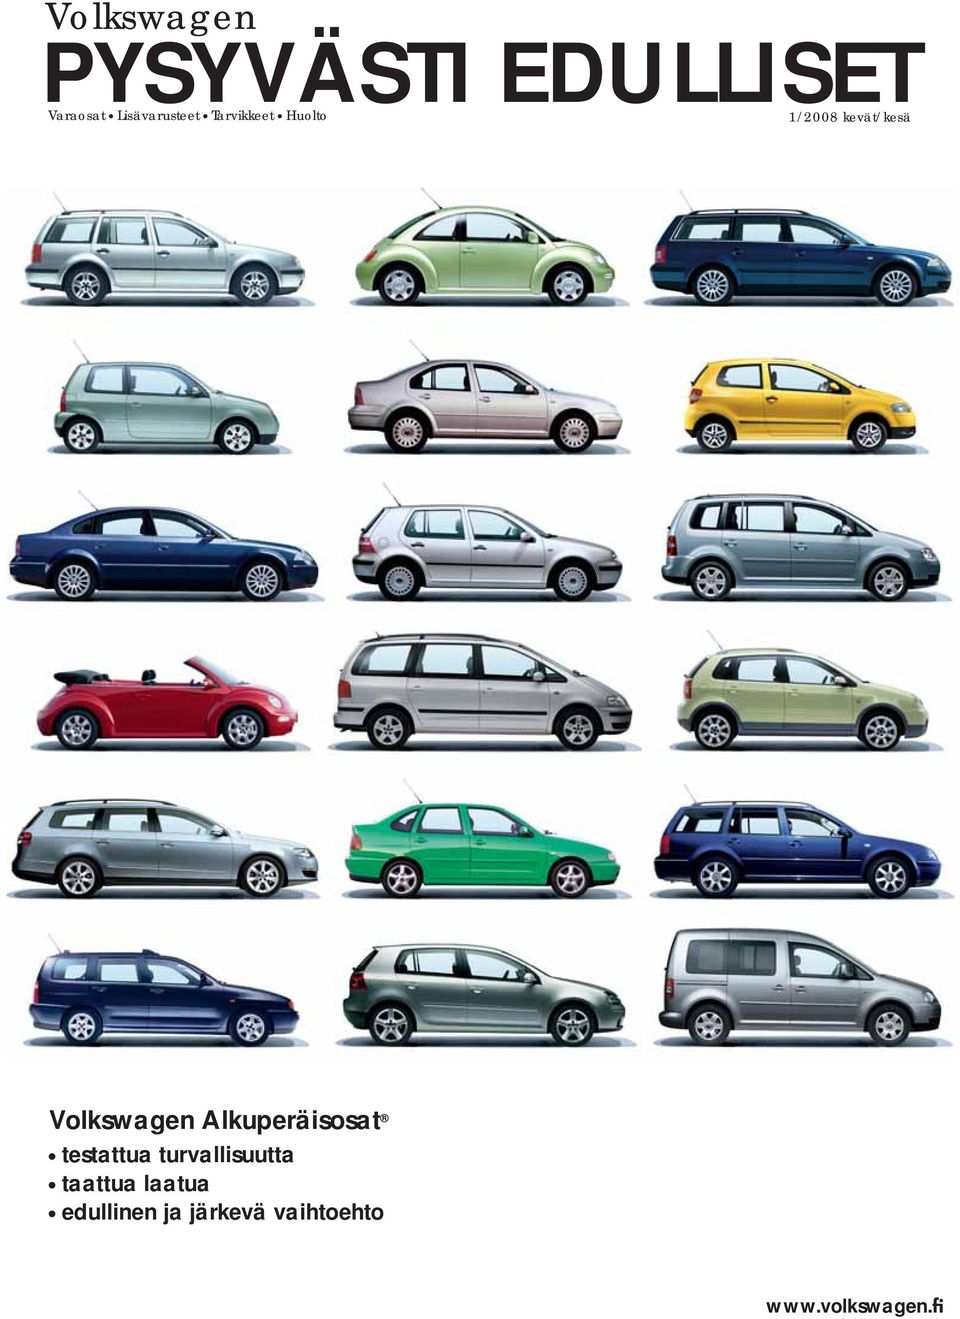 Volkswagen Alkuperäisosat testattua turvallisuutta